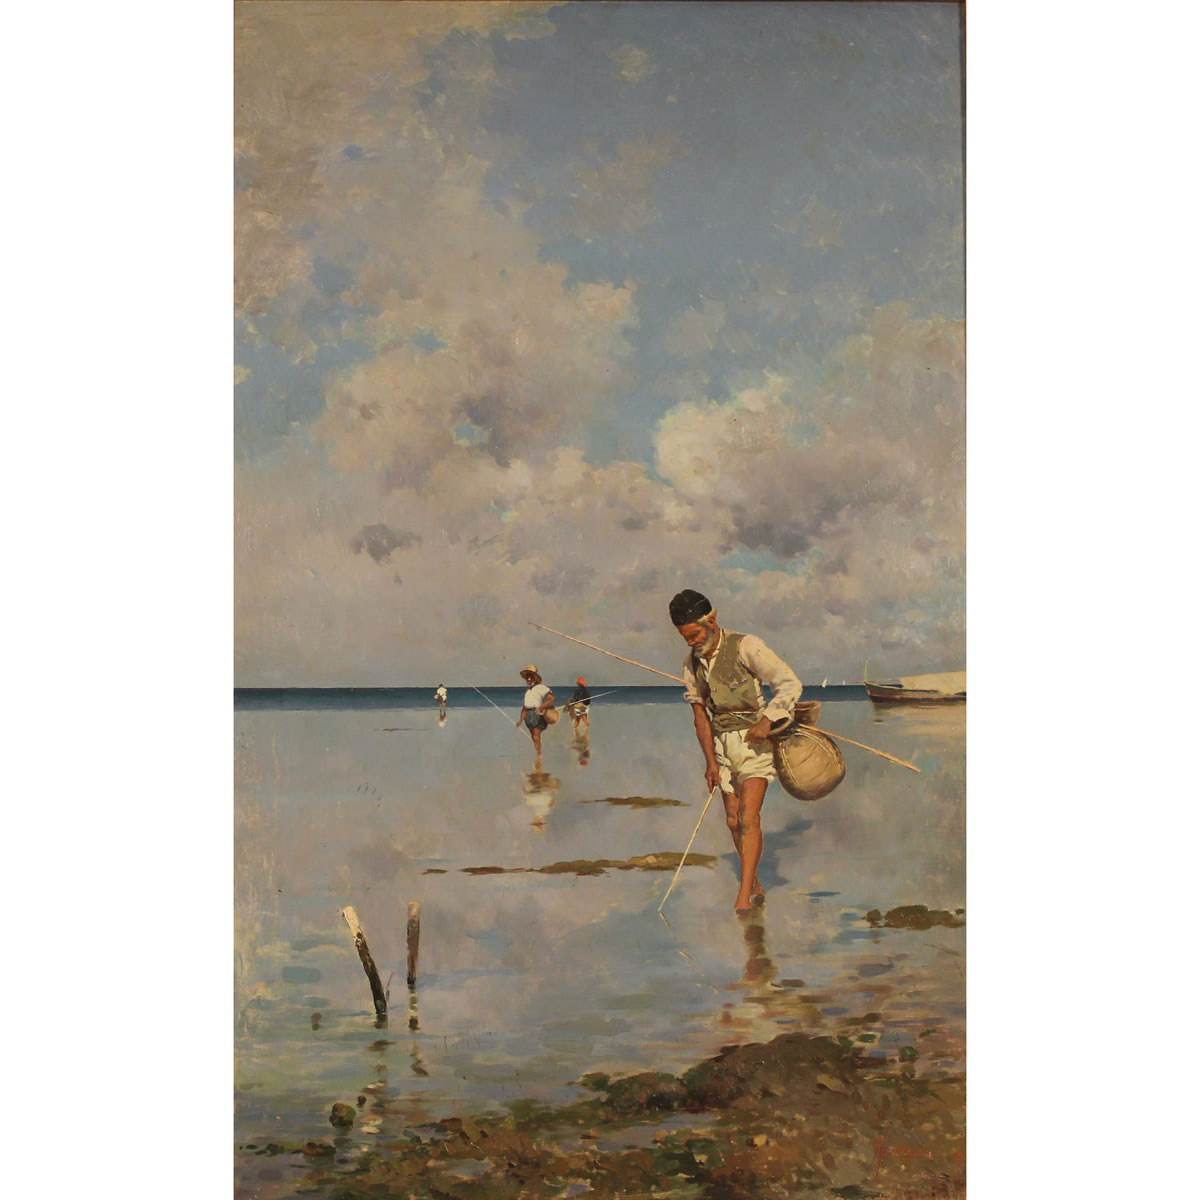 Michele Cortegiani (1857/1919) "Pescatori di telline" - "Fishermen of clams"